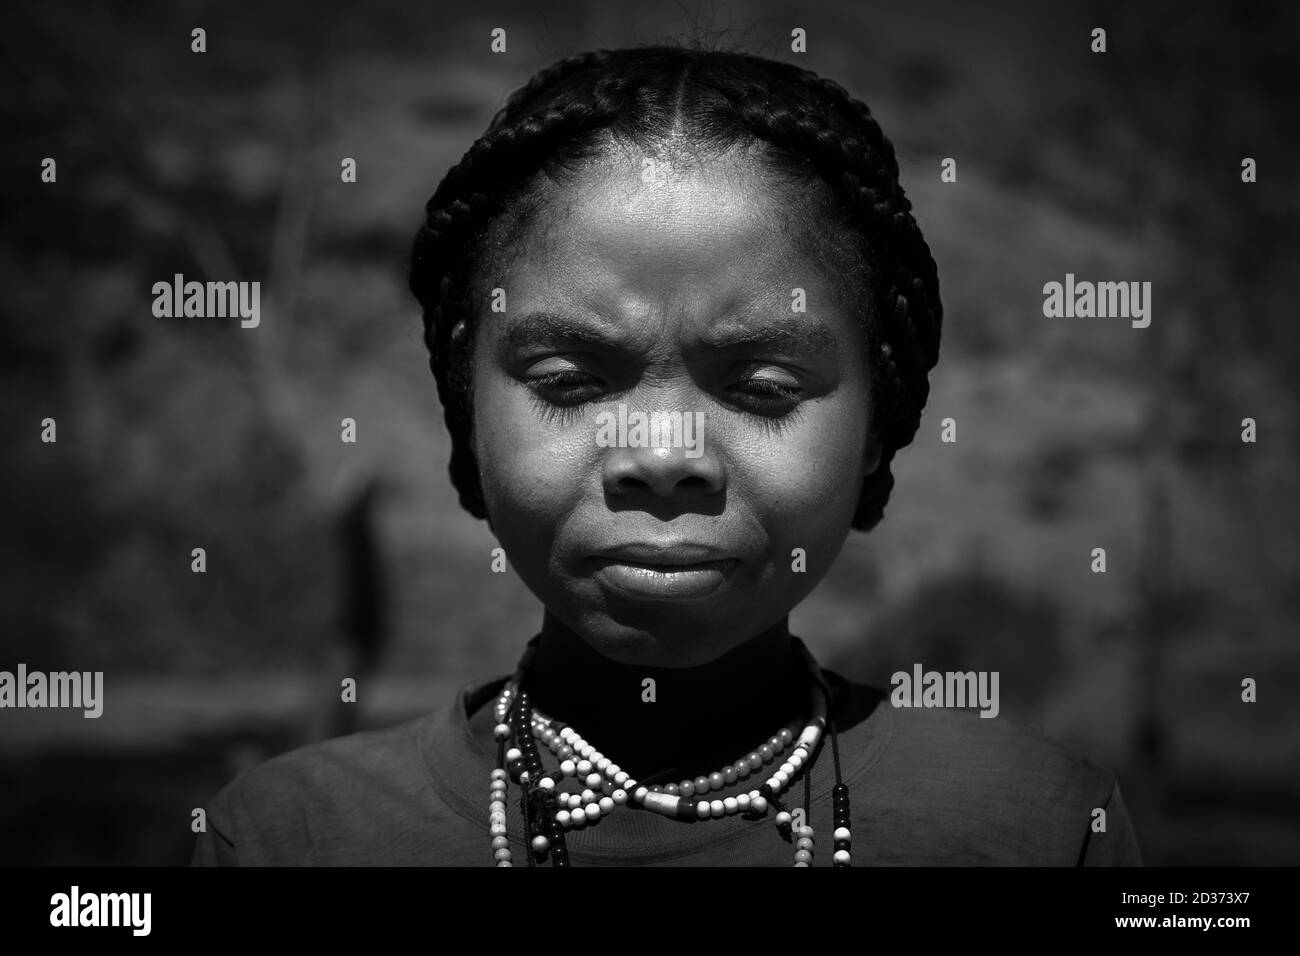 Tsaranoro Camp, Andringitra Nationalpark, Zentral Madagaskar - November 2018: Schöne einheimische madagassische Frau, die nach vorne schaut, mit etwas traurigem Blick Stockfoto